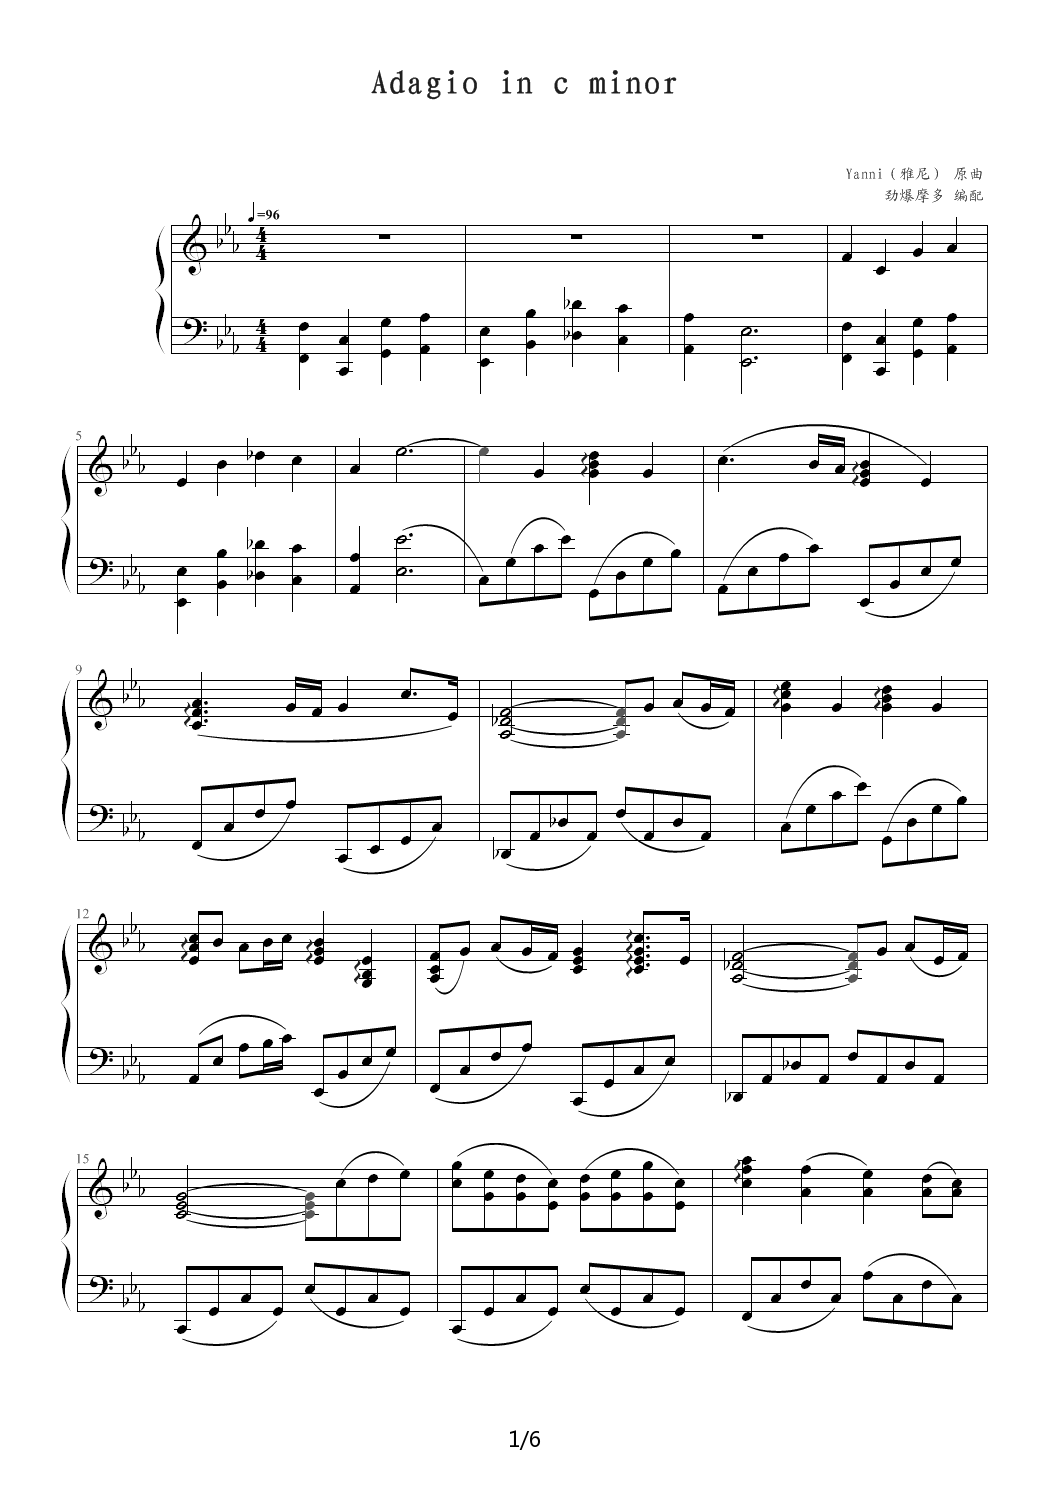 Adagio-in-c-minor钢琴谱|Adagio-in-c-minor最新钢琴谱|Adagio-in-c-minor钢琴谱下载